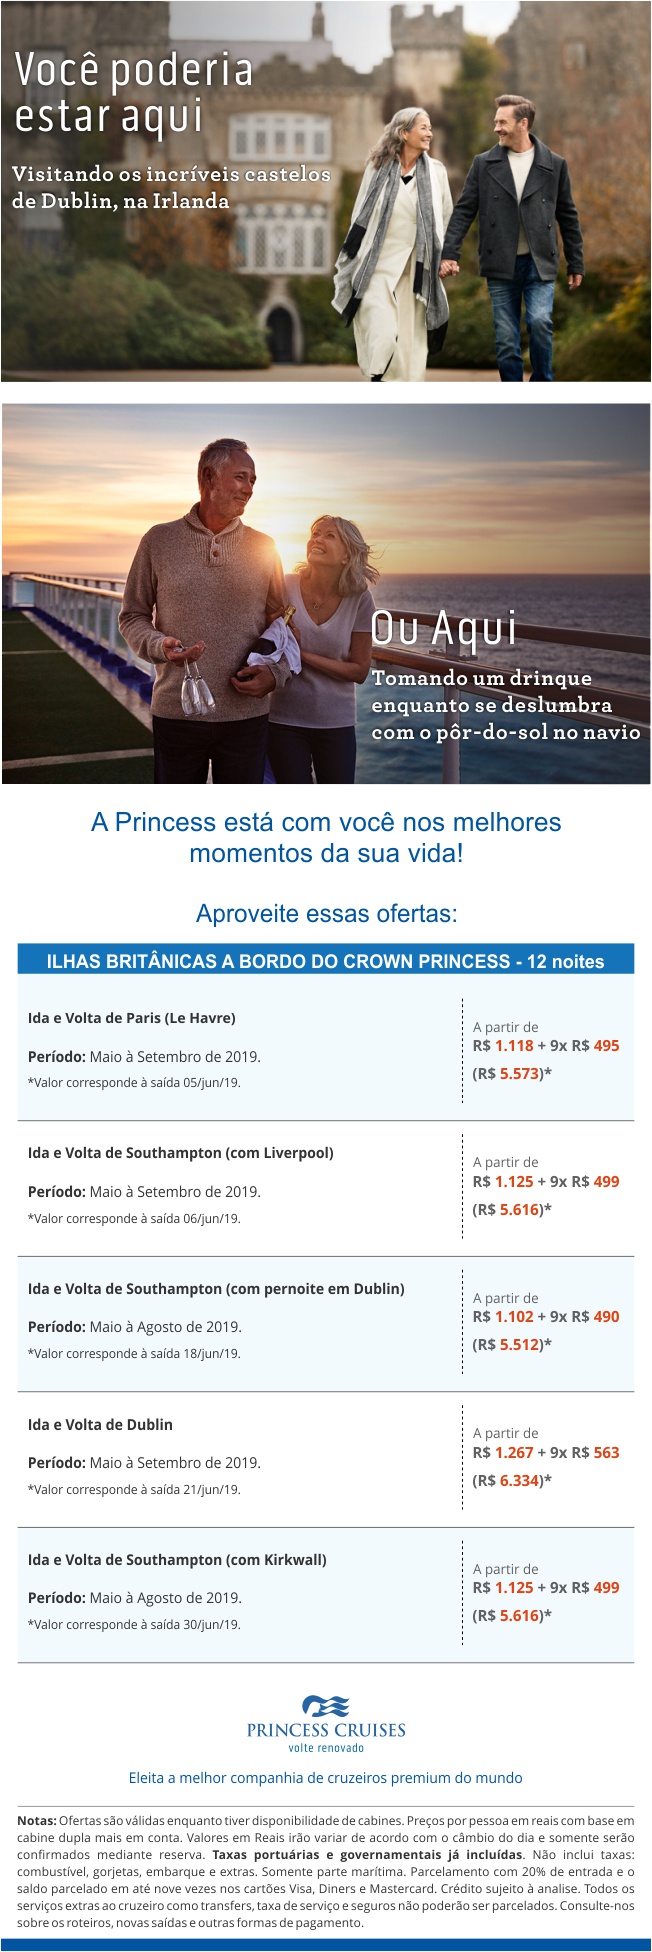 Princess – Cruzeiros pelas Ilhas Britânicas, aproveite promoções